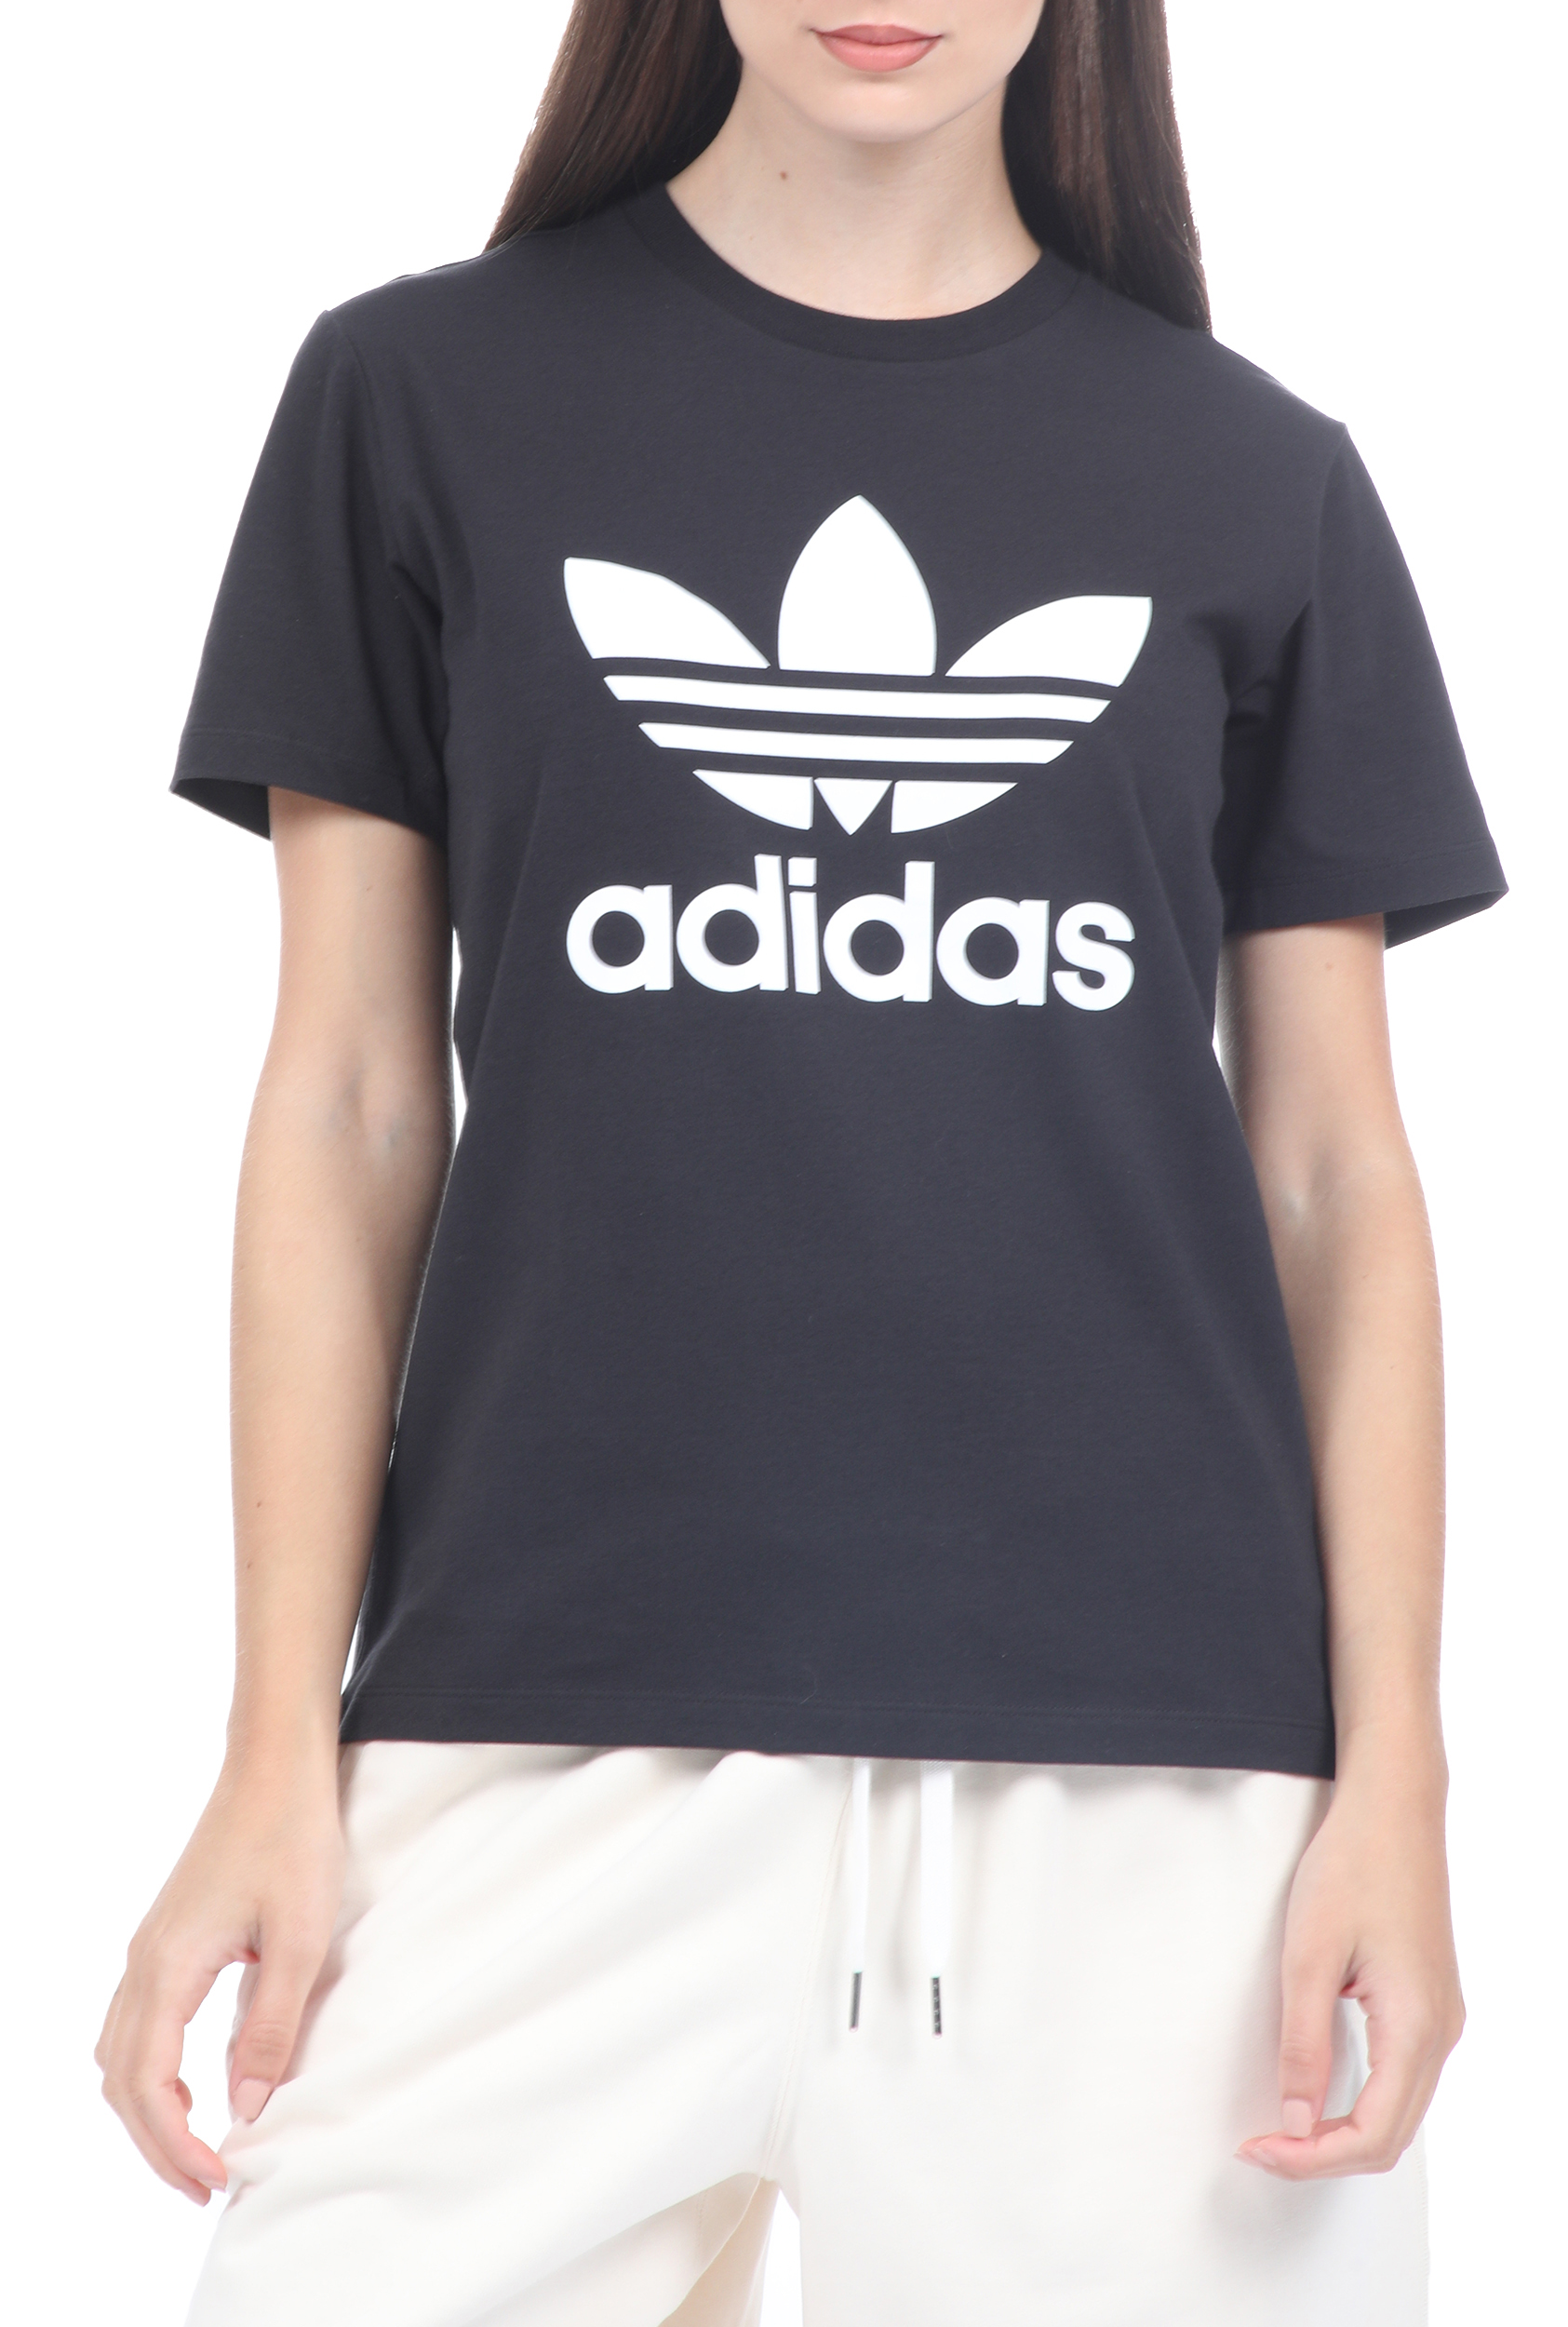 Γυναικεία/Ρούχα/Αθλητικά adidas Originals - Γυναικεία κοντομάνικη μπλούζα Adidas Originals μαύρη